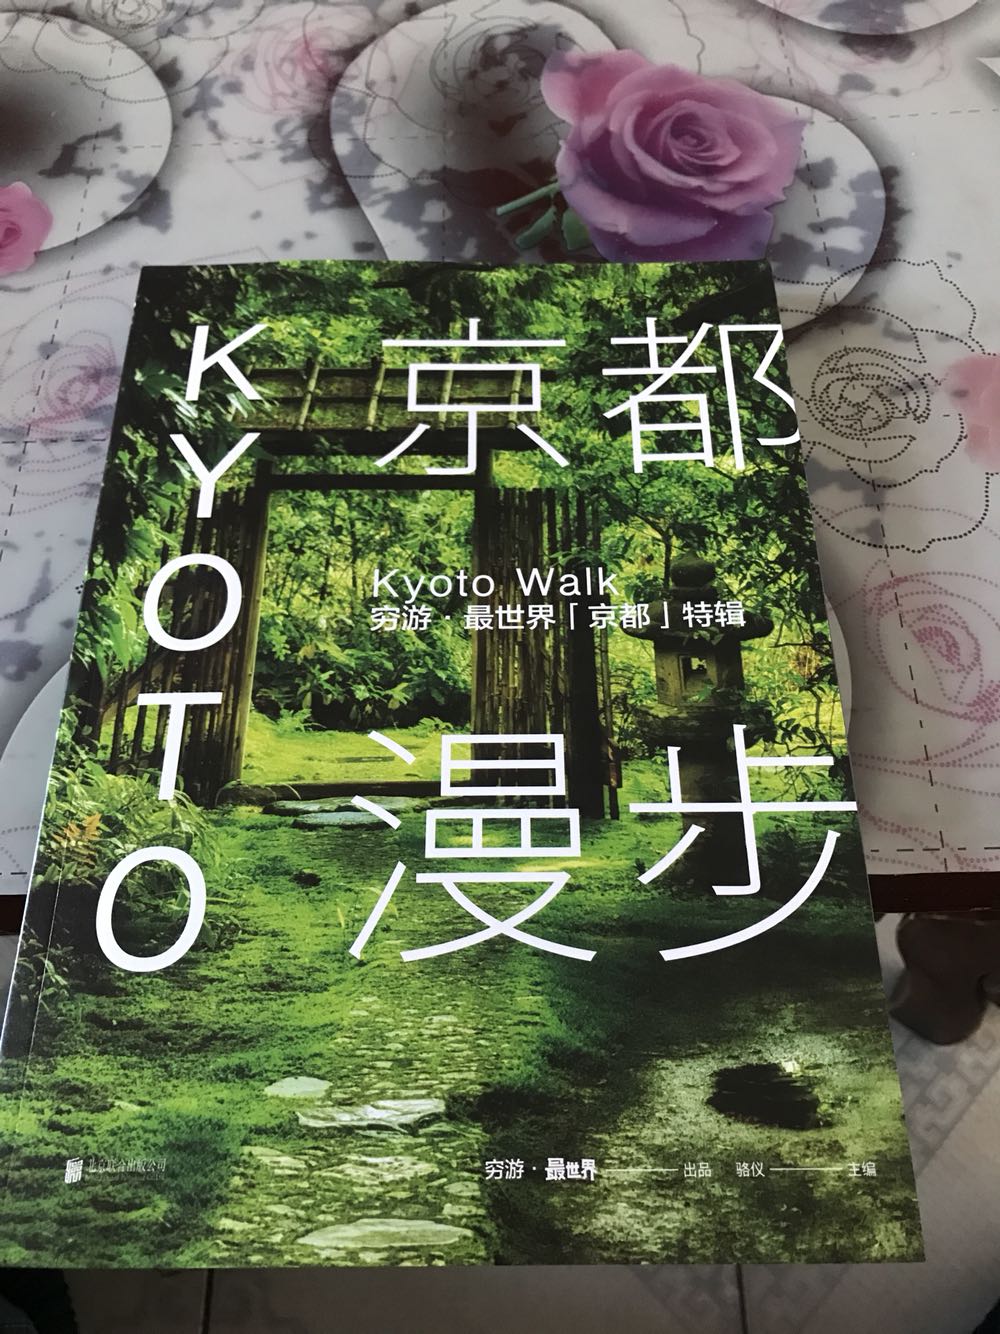 非常喜欢京都的古典气质，以后一定要去玩玩，印刷精美，但是40多块买本书，略贵。